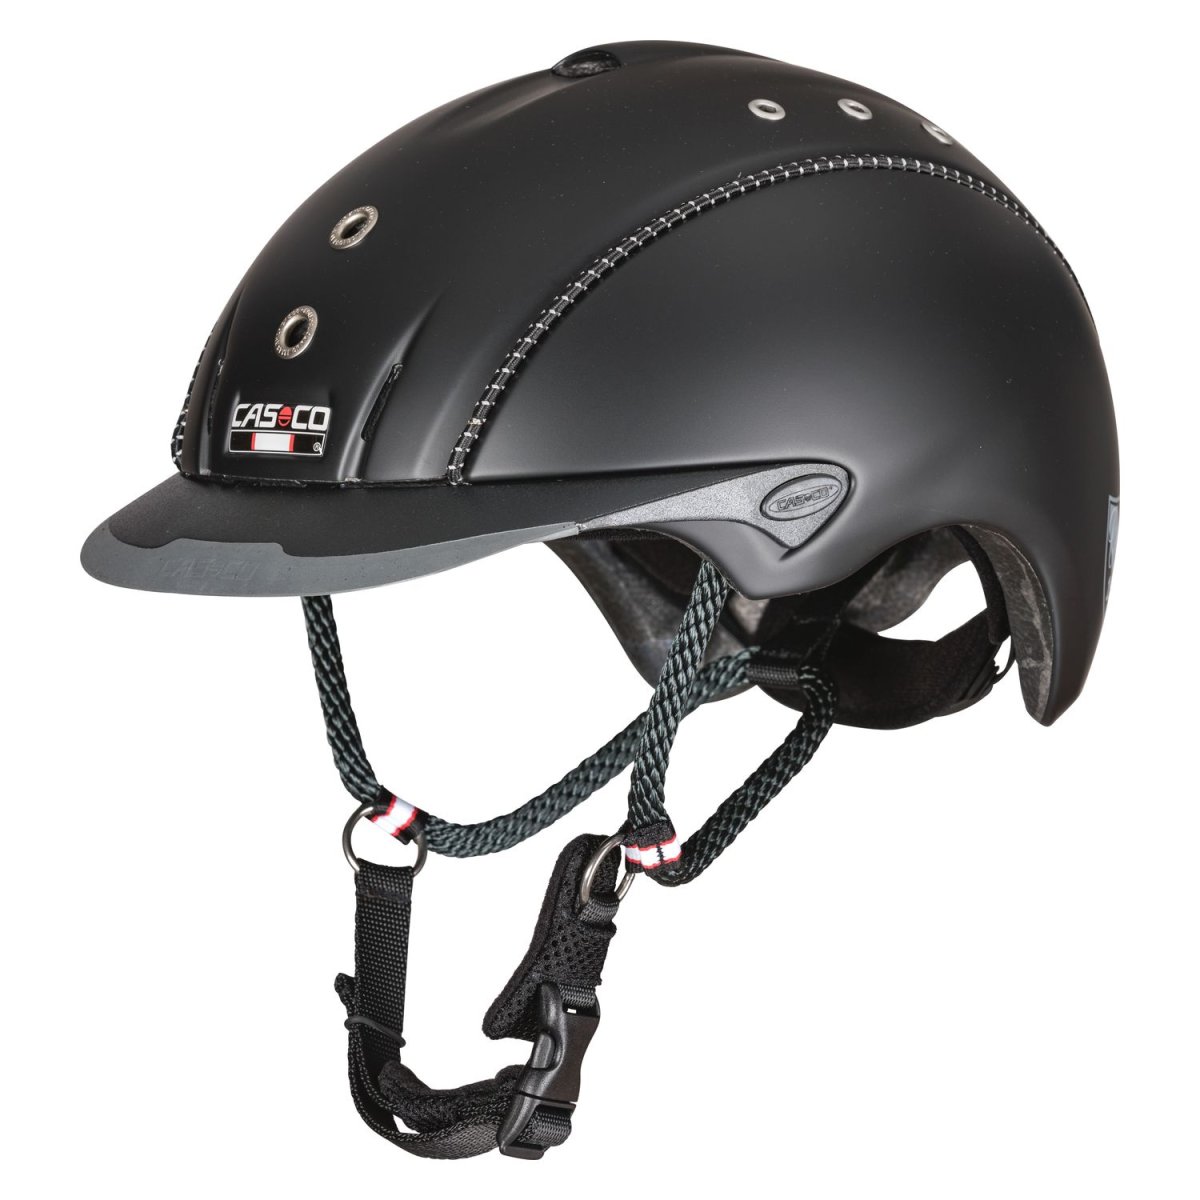 Casco Mistrall 2 шлемы для верховой езды